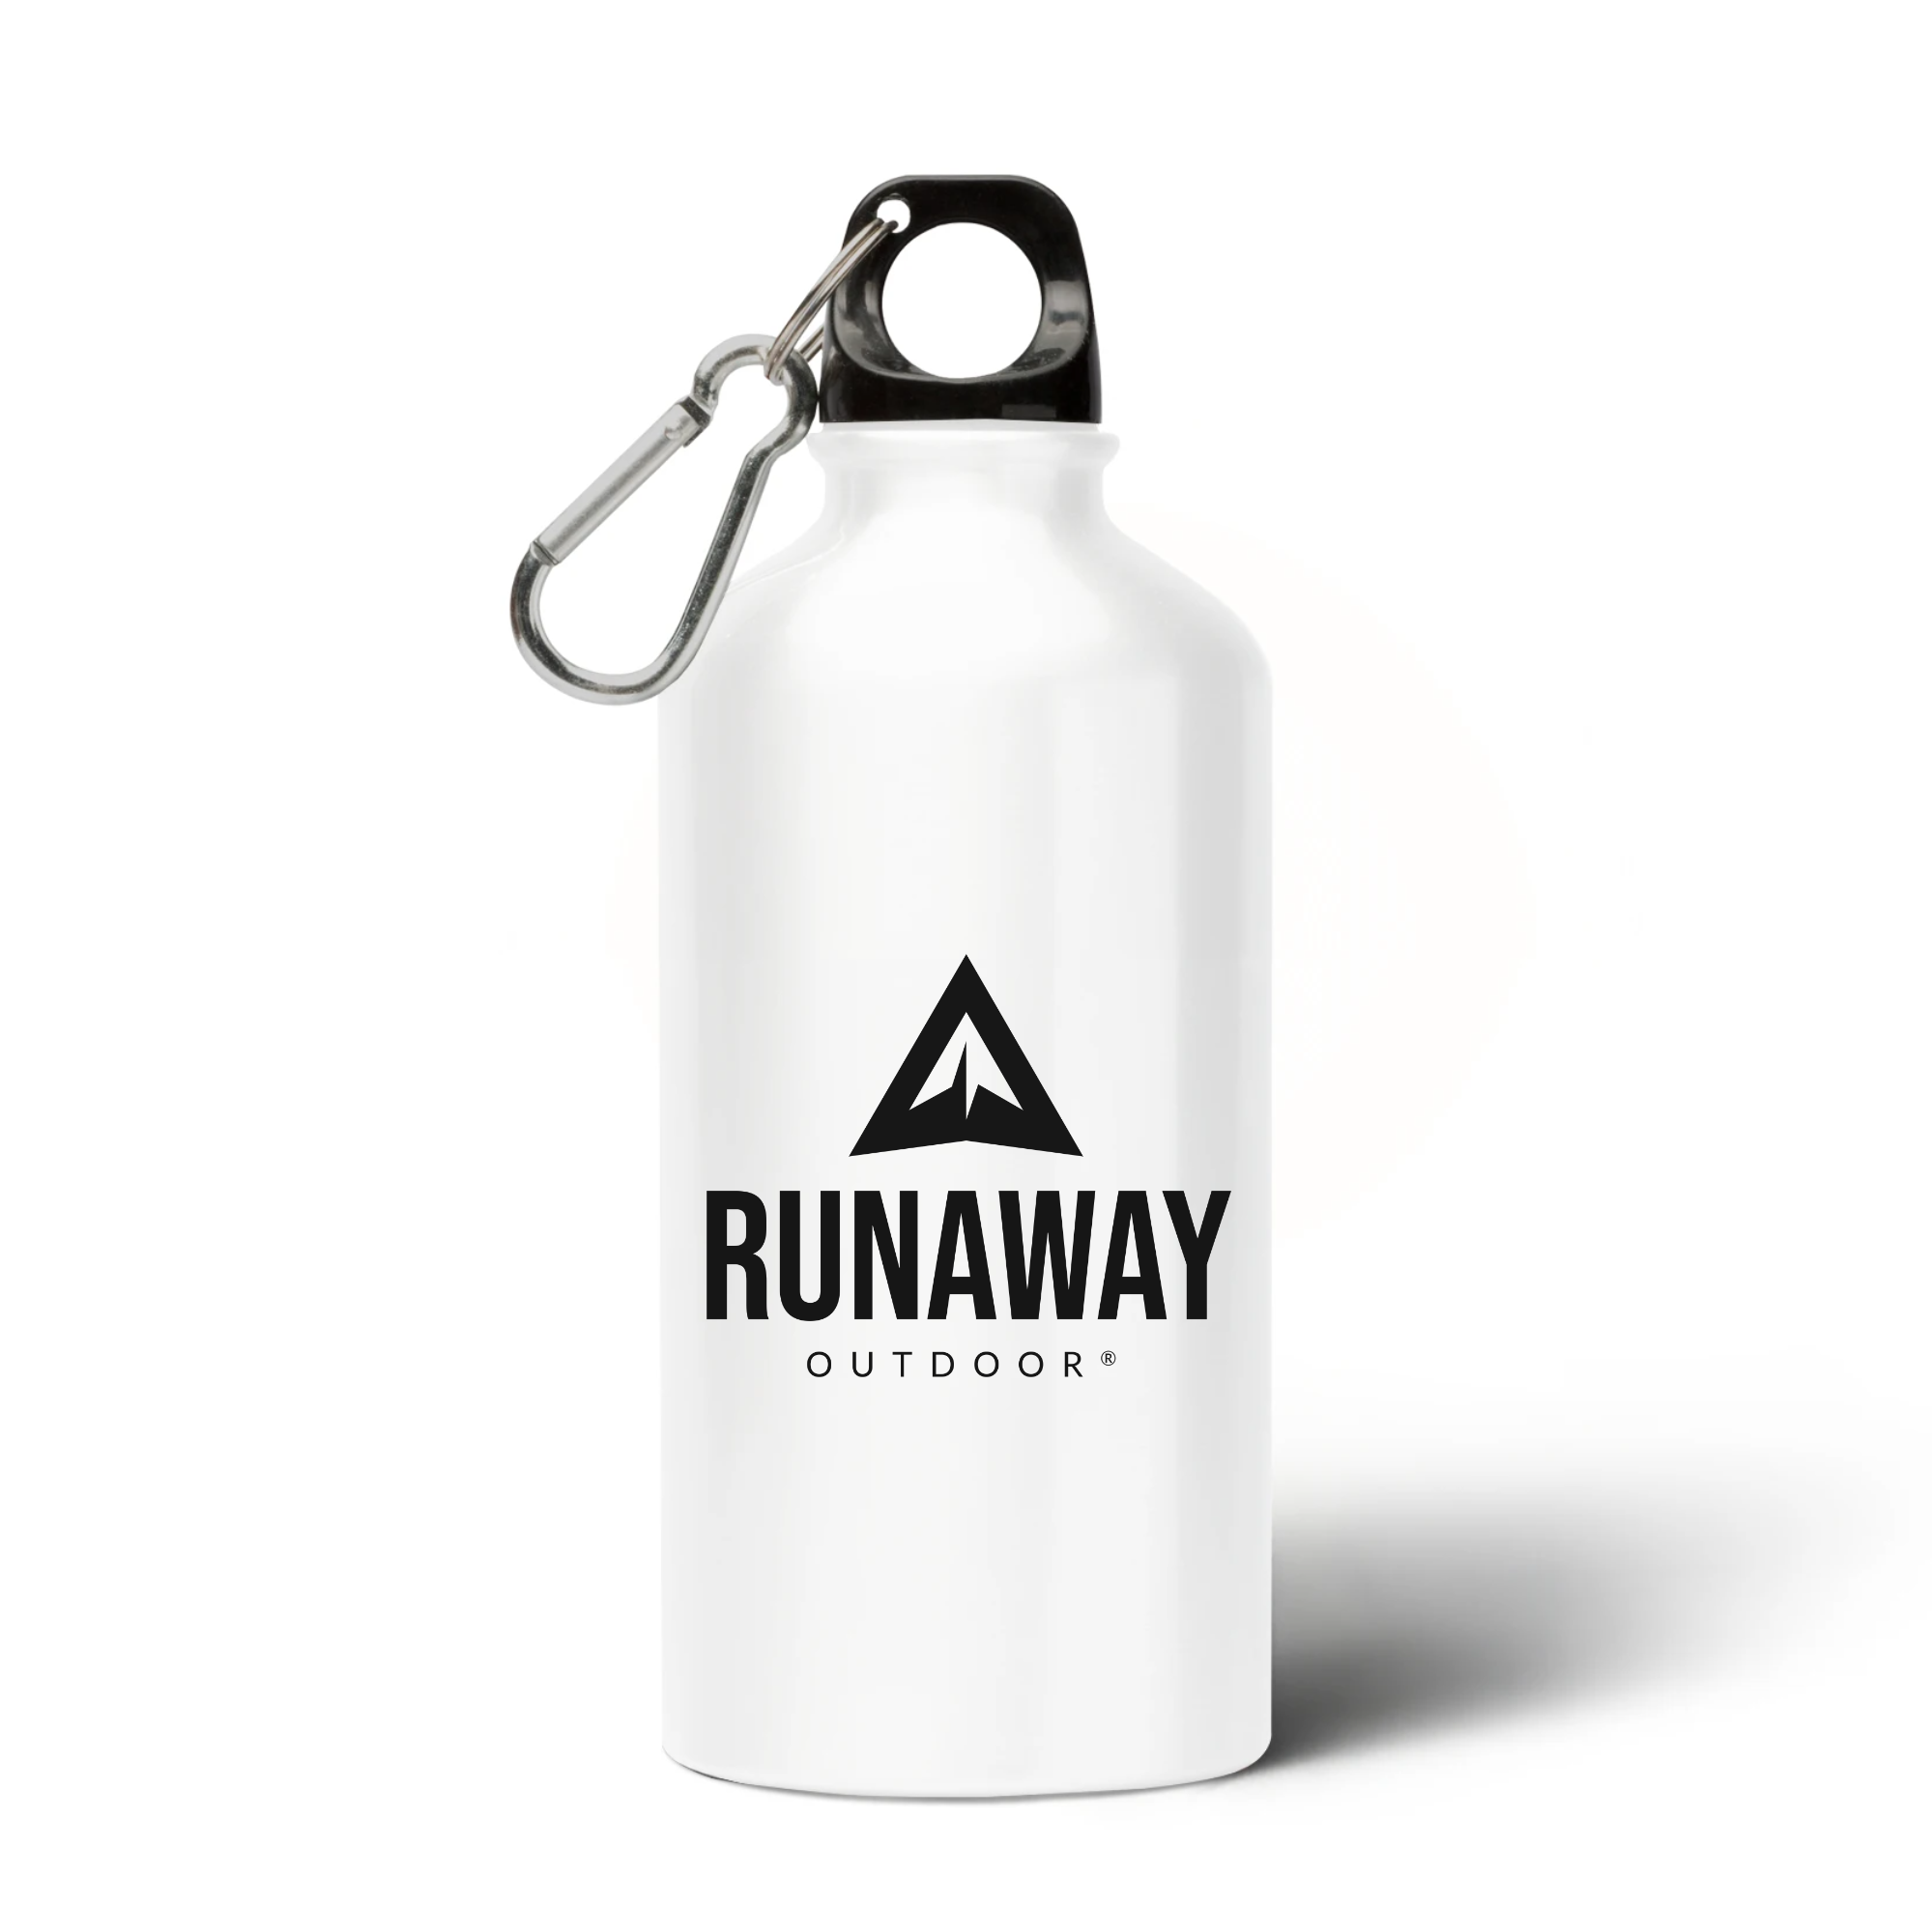 Runaway Outdoor reusable water bottle